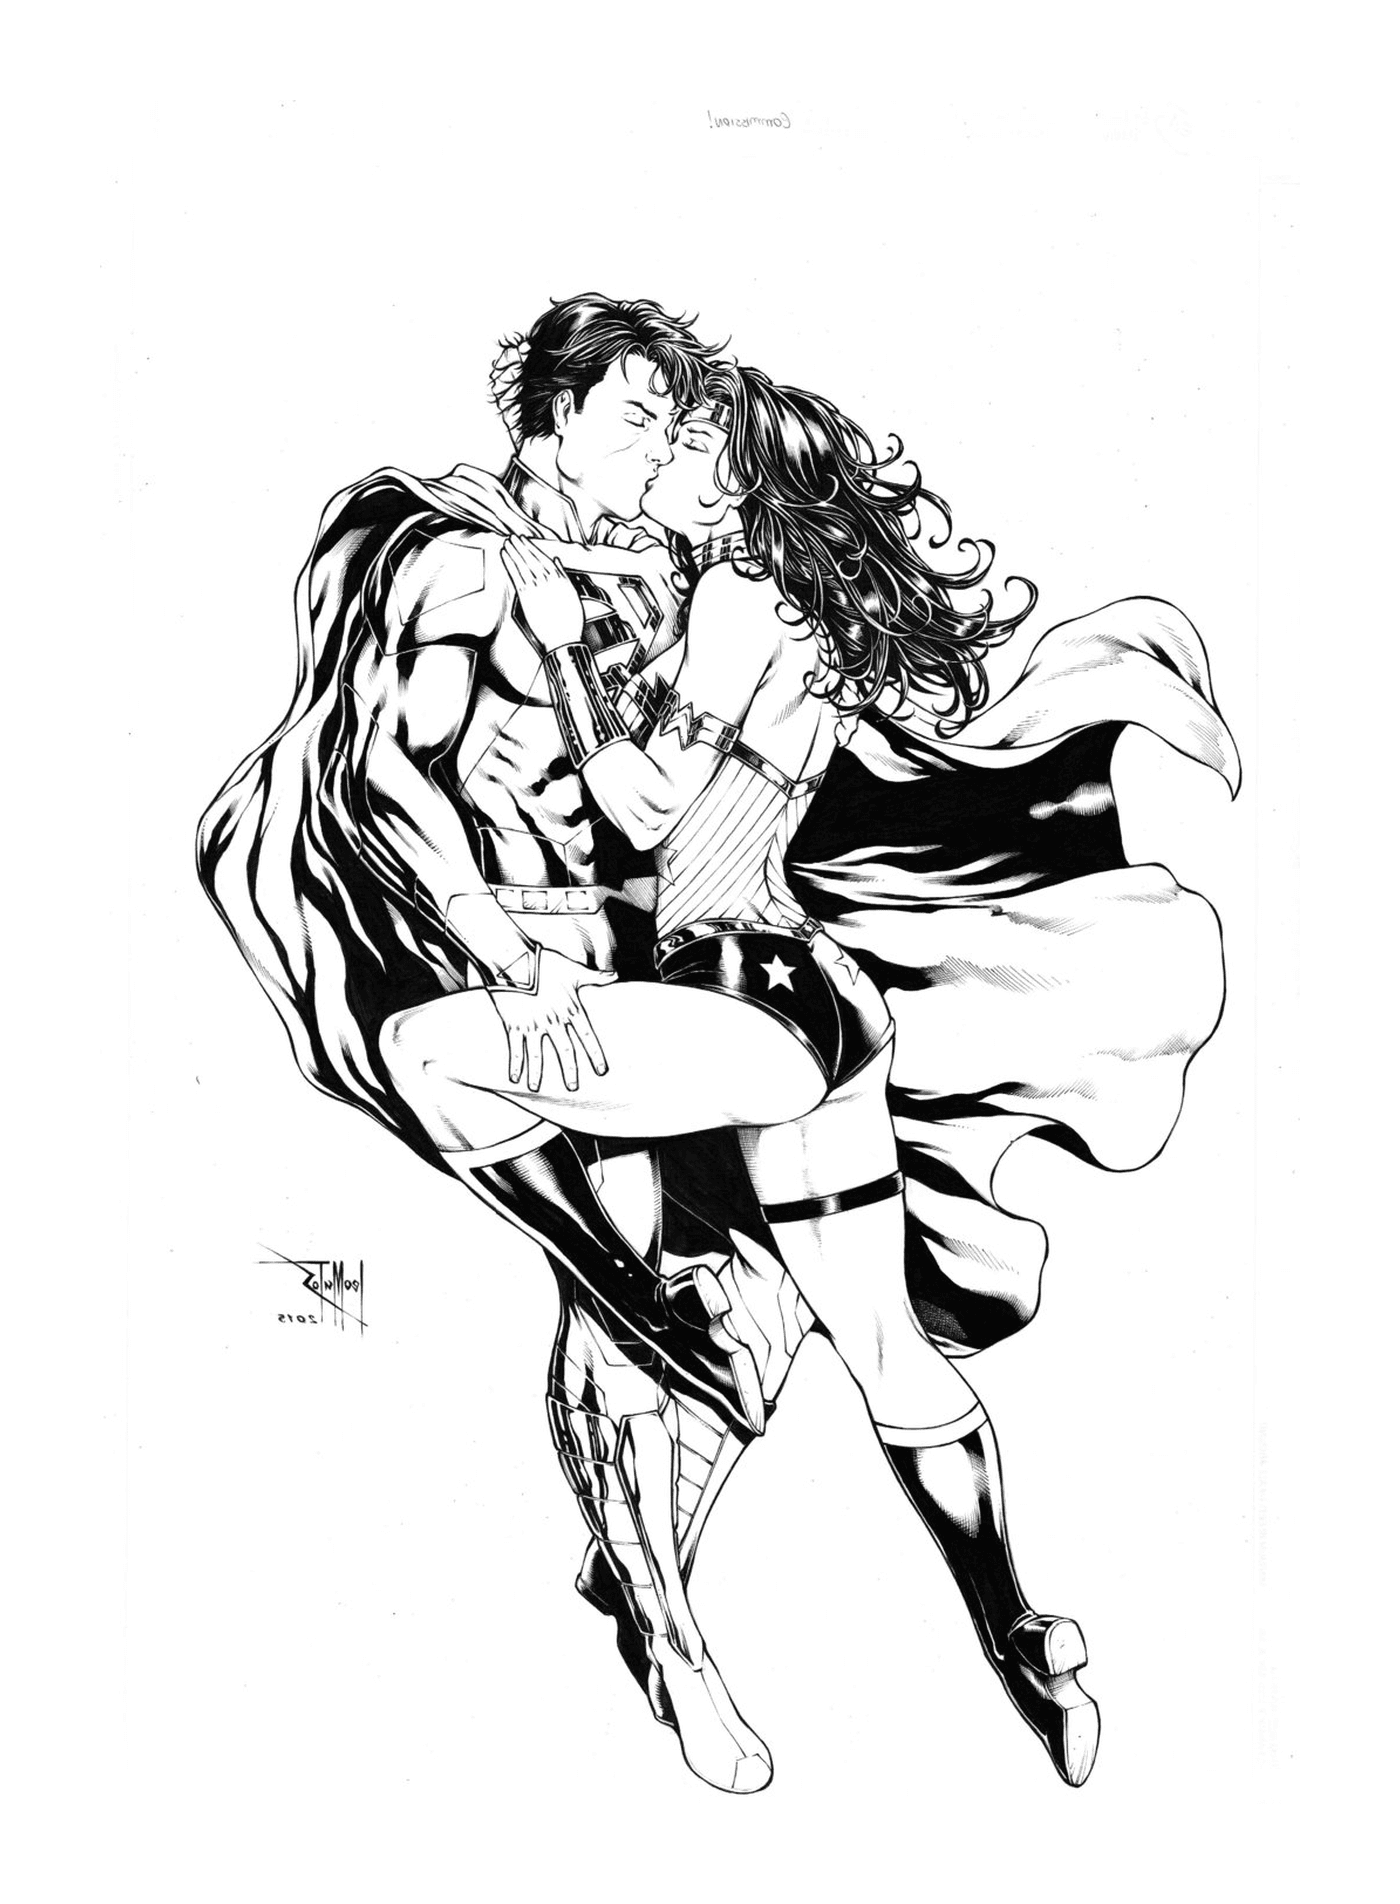  Superman und Wonder Woman küssen sich 